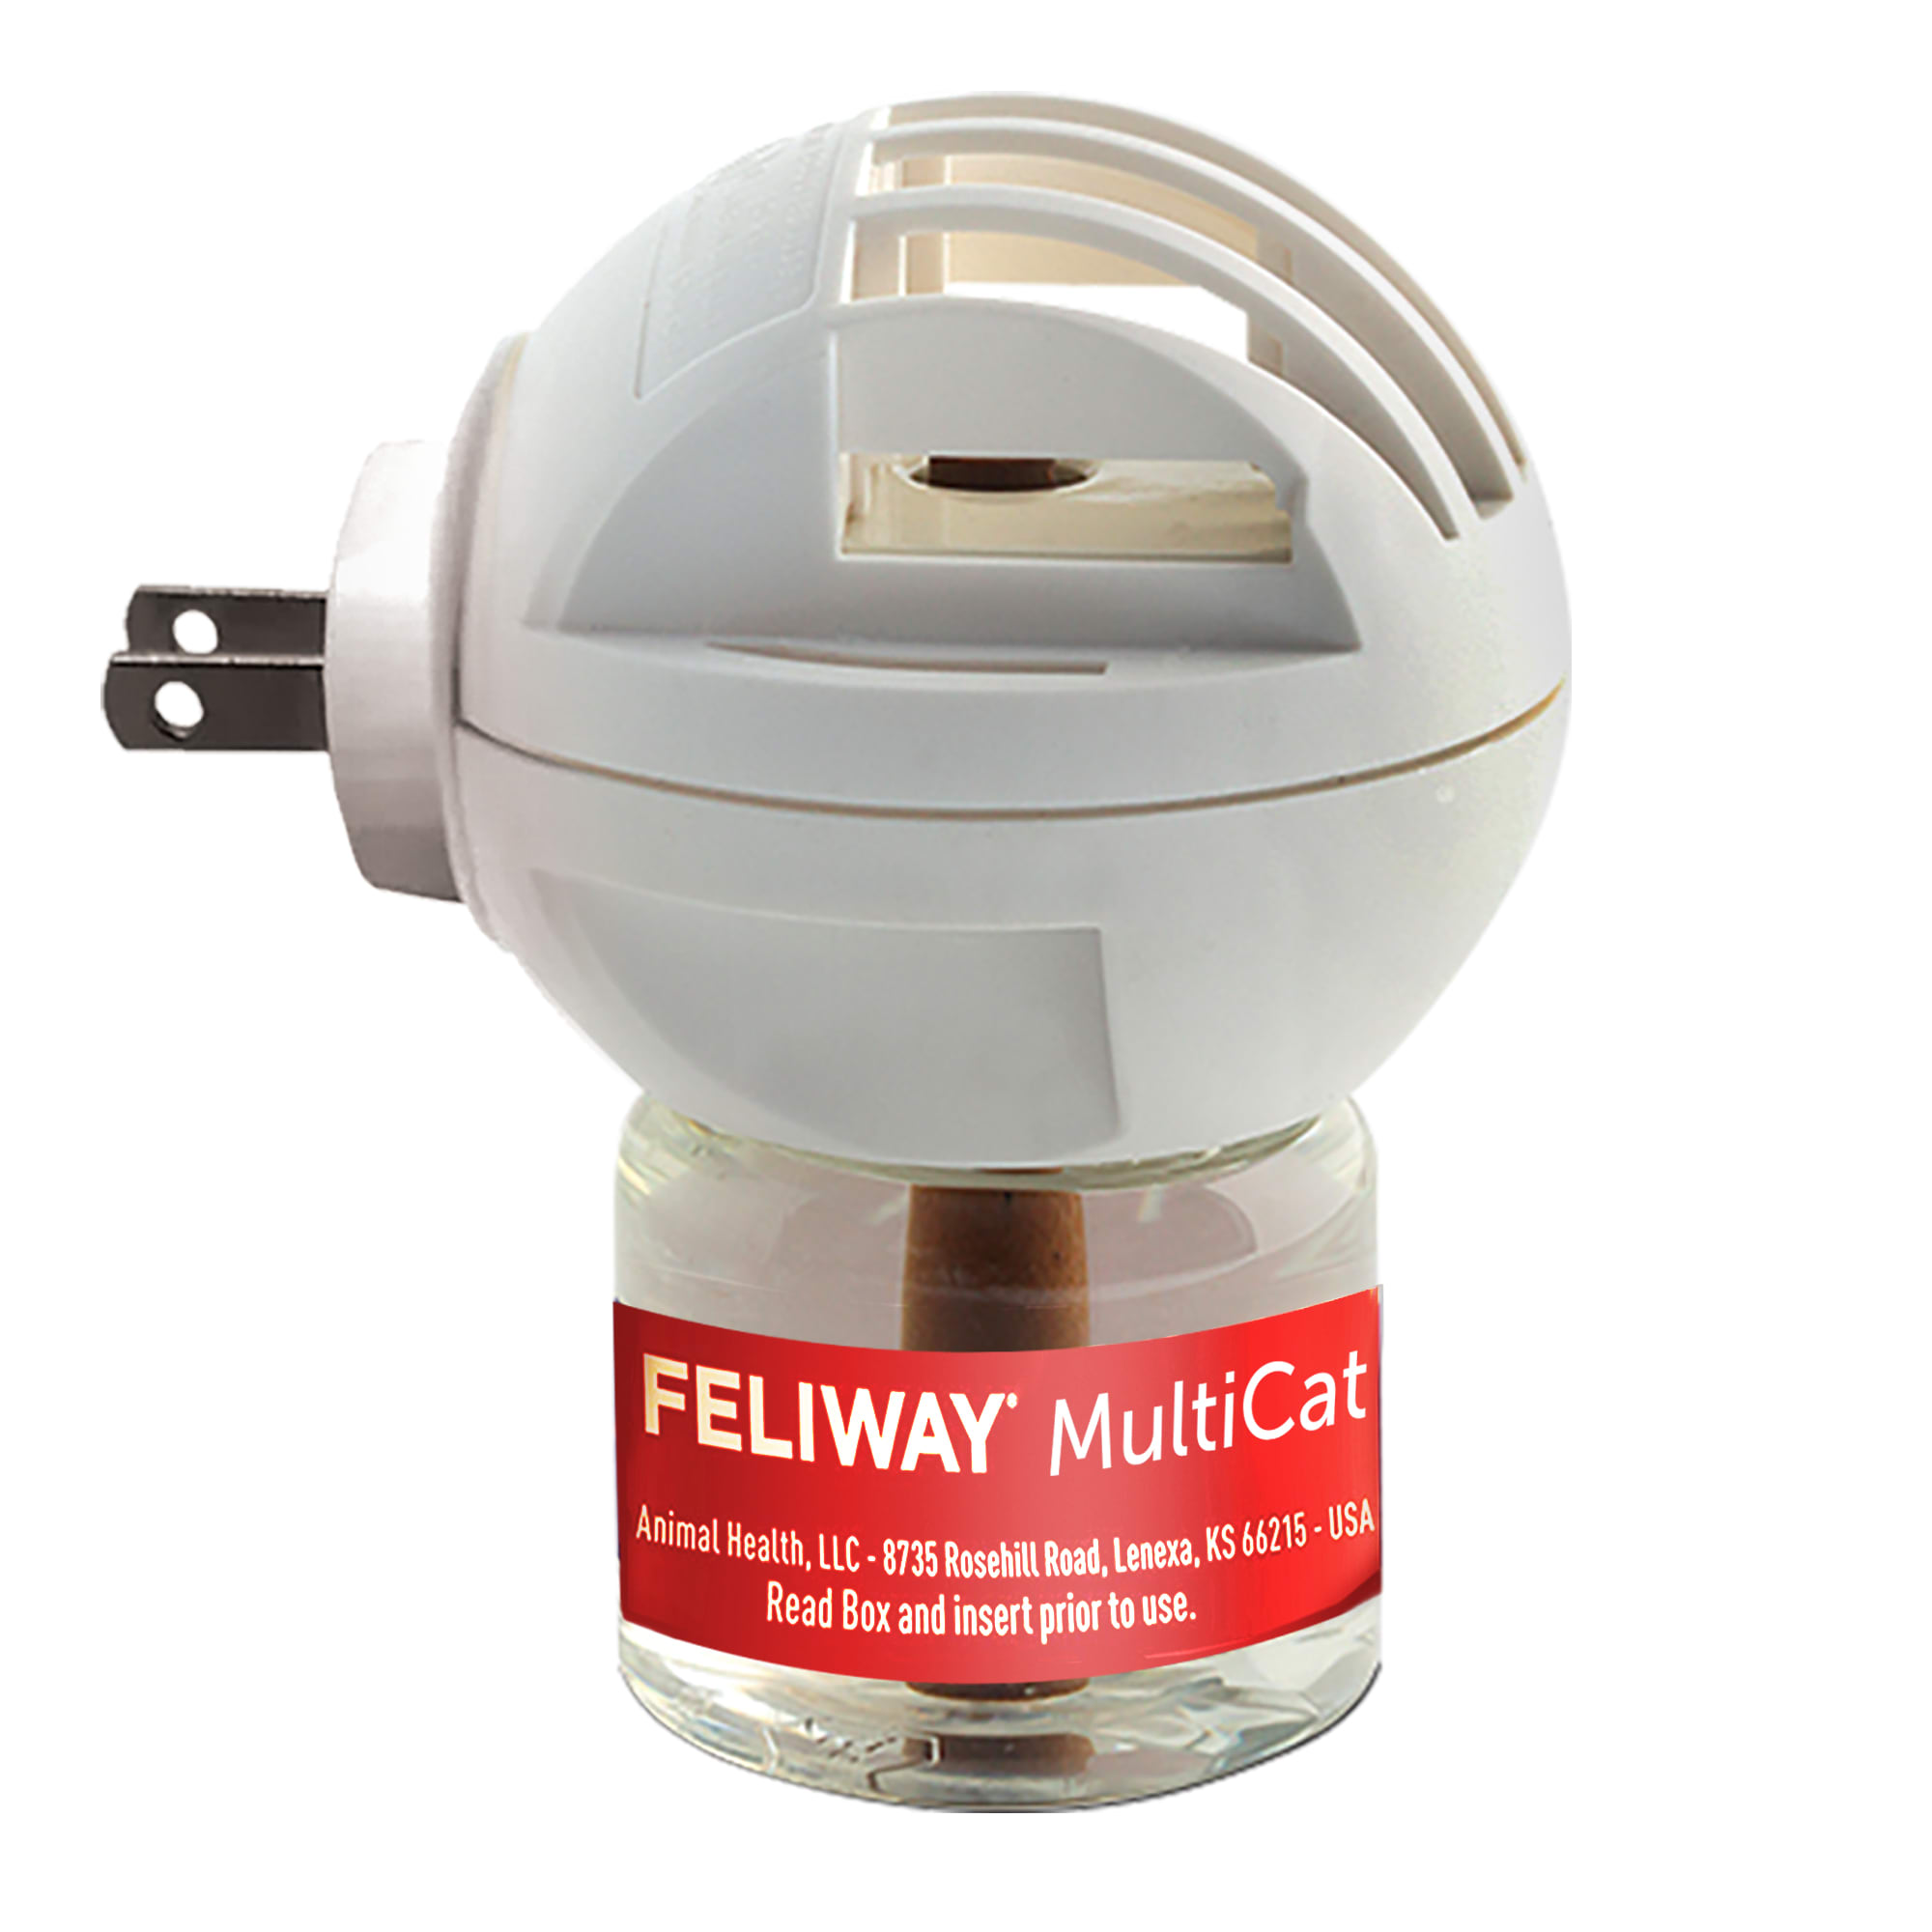 FELIWAY Recharge 48 ml - JMT Alimentation Animale